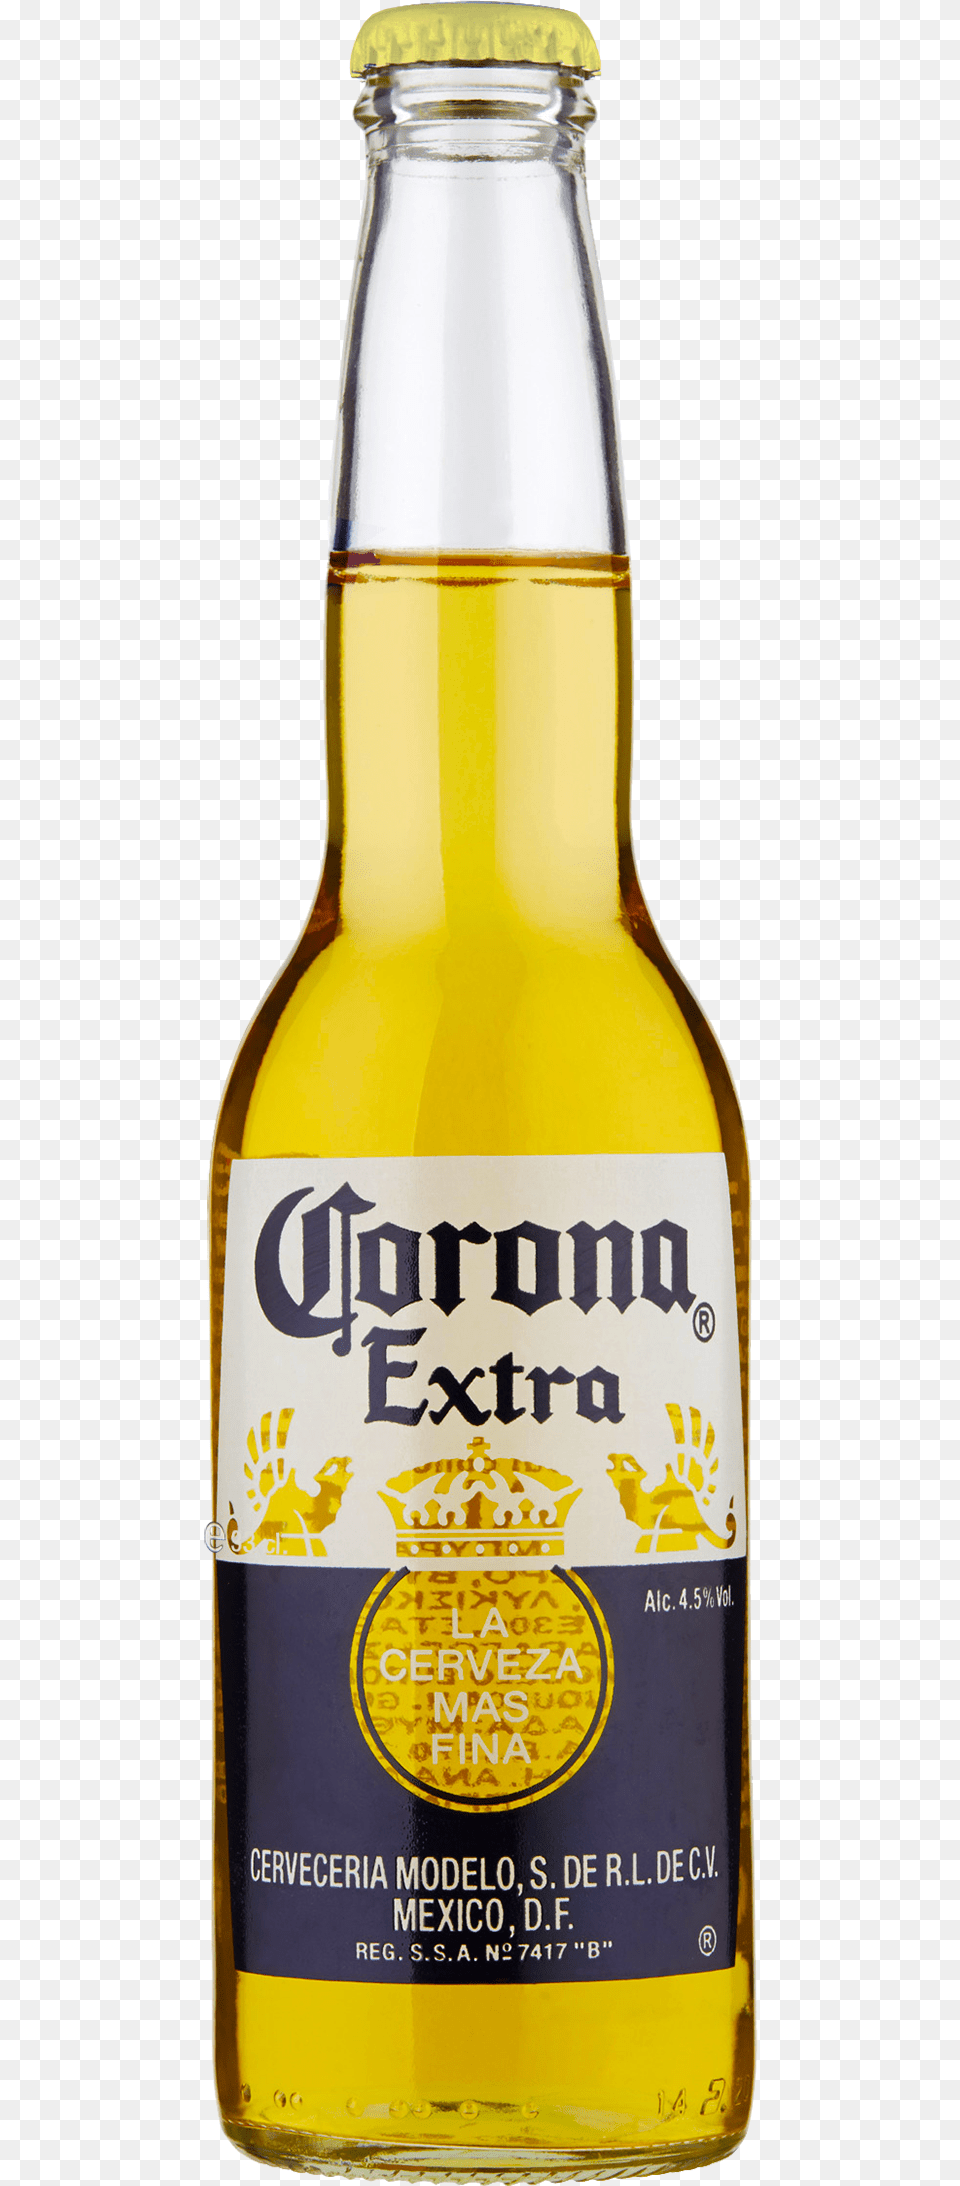 Corona Extra Beer Bottle Transparent Corona Beer, Alcohol, Beer Bottle, Beverage, Liquor Png